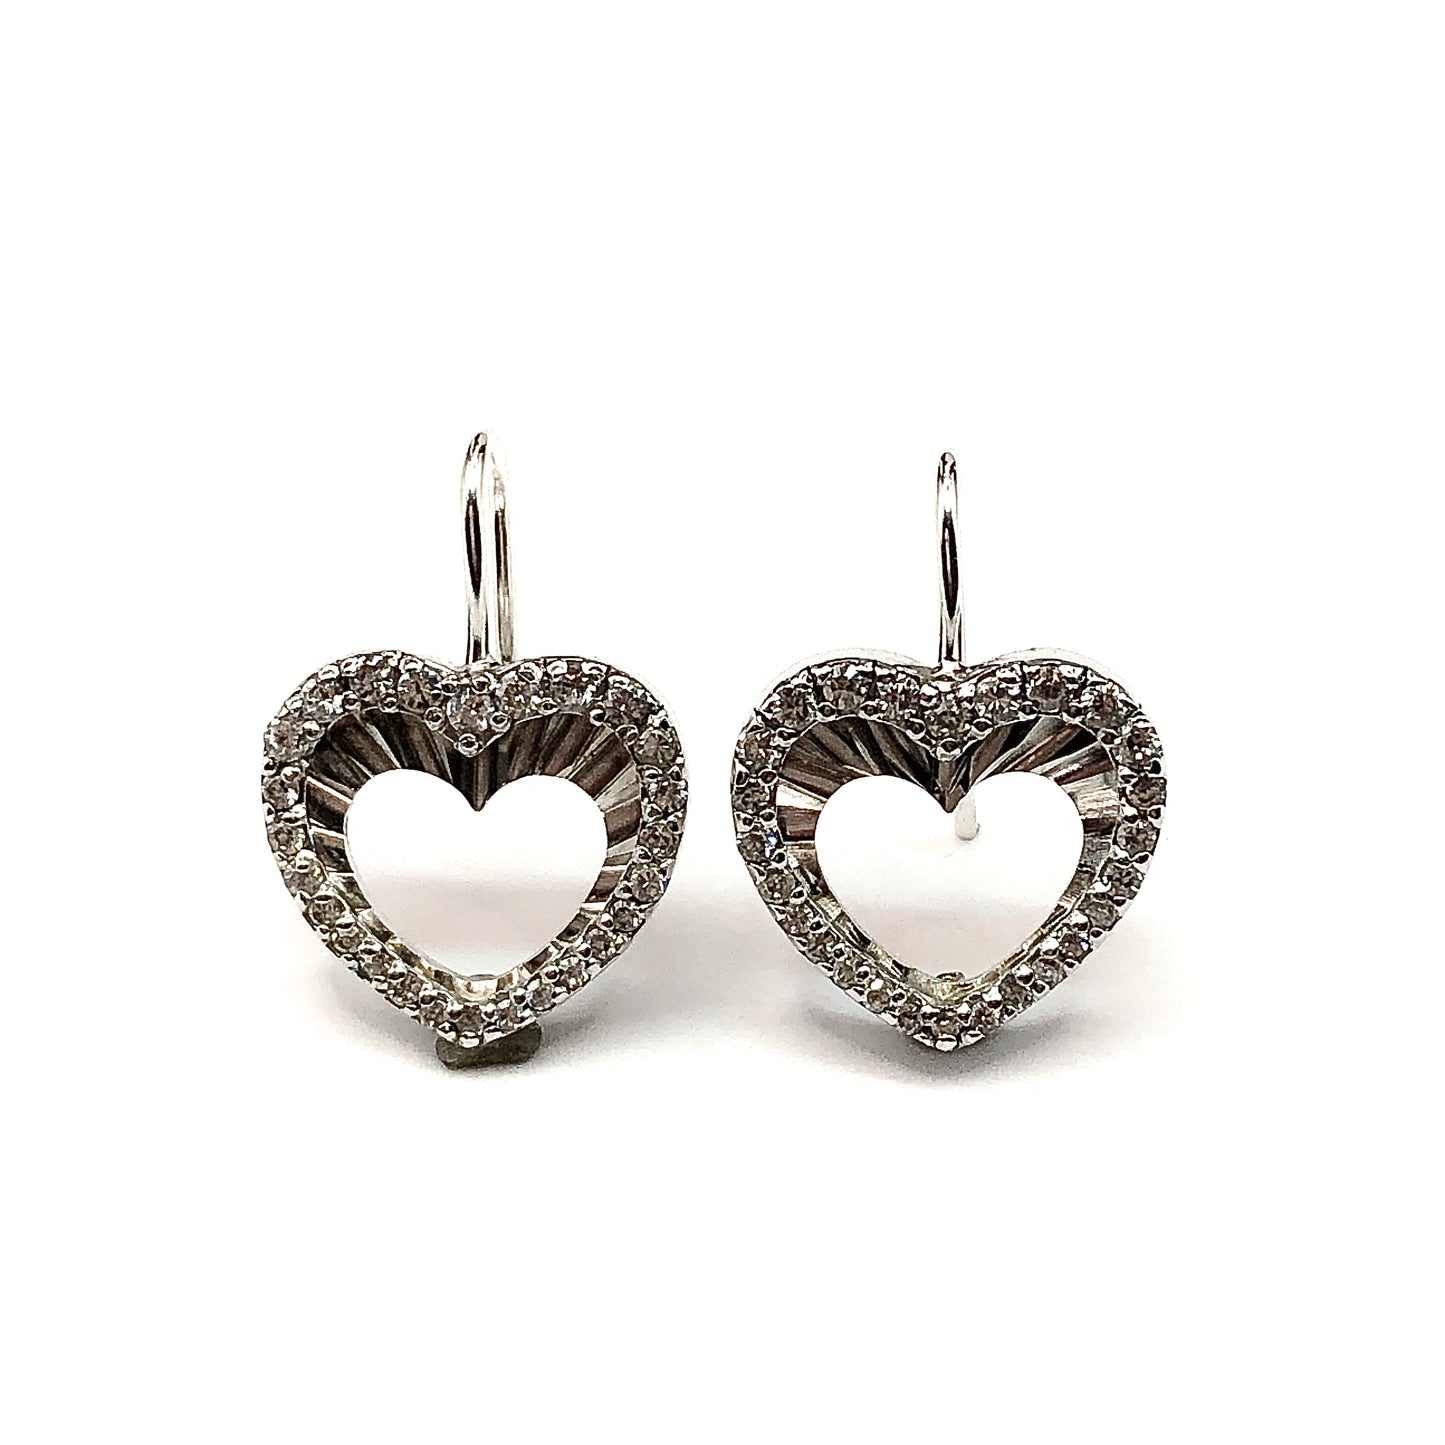 Earrings - Womens Sterling Silver Cubic Zirconia Stone Earrings - Open Heart Style Short Drop Earrings - Affordable ✔✔